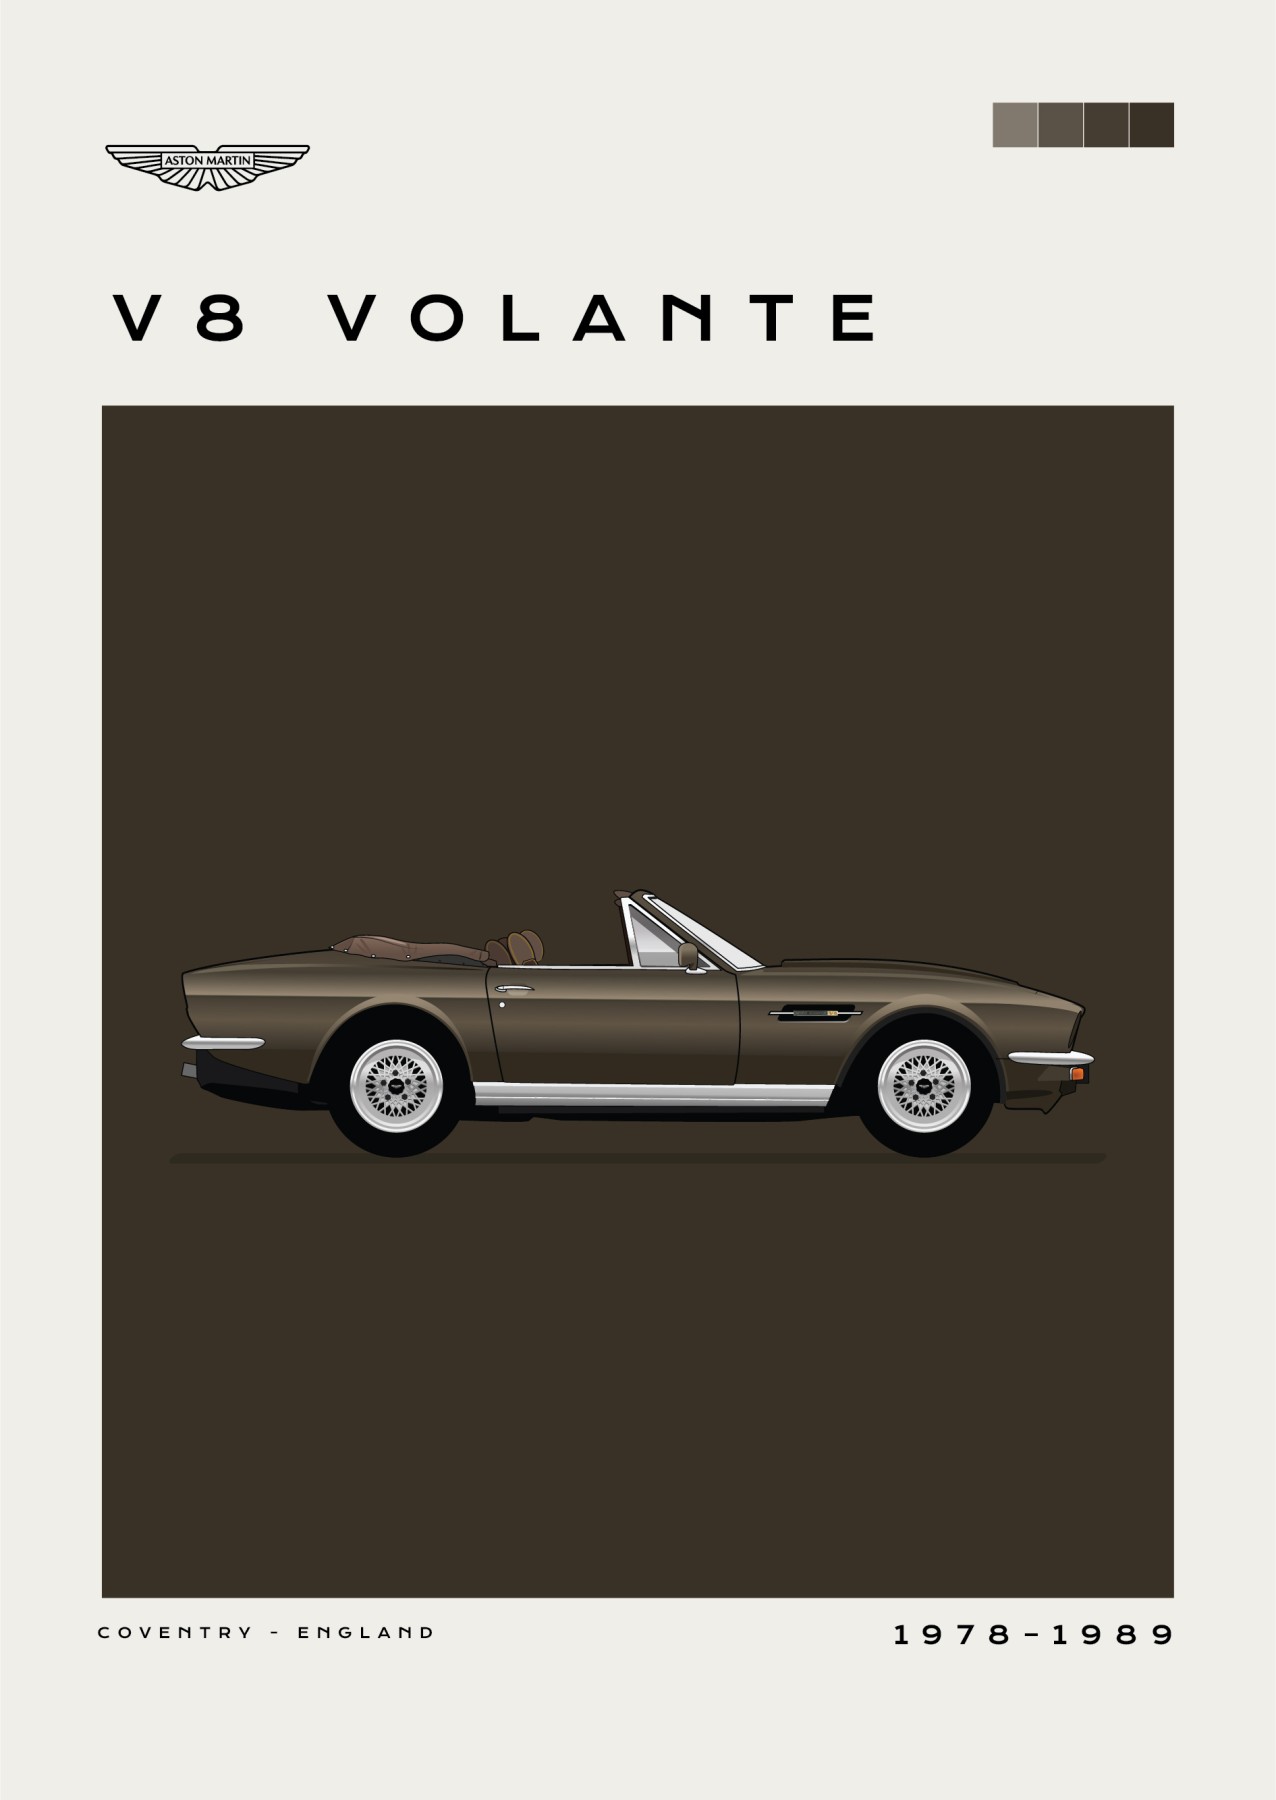 Aston Martini - V8 Volante - Brown